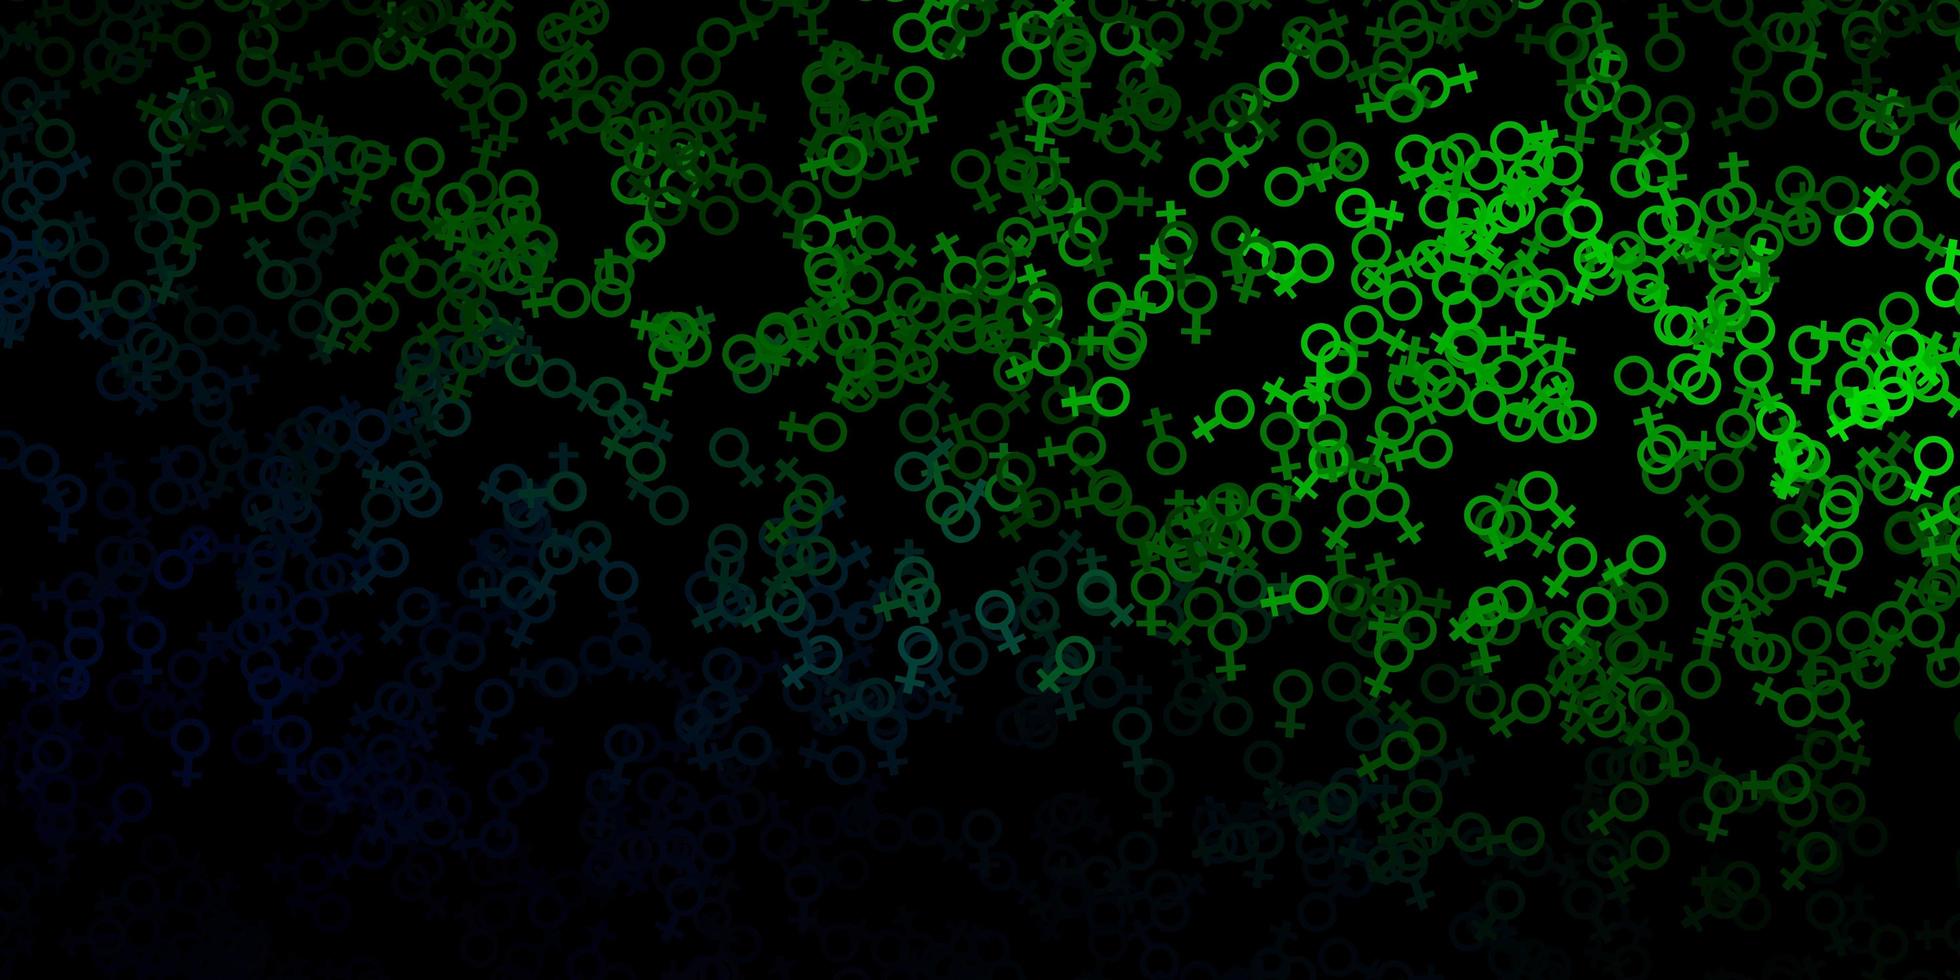 sfondo vettoriale verde scuro con simboli occulti